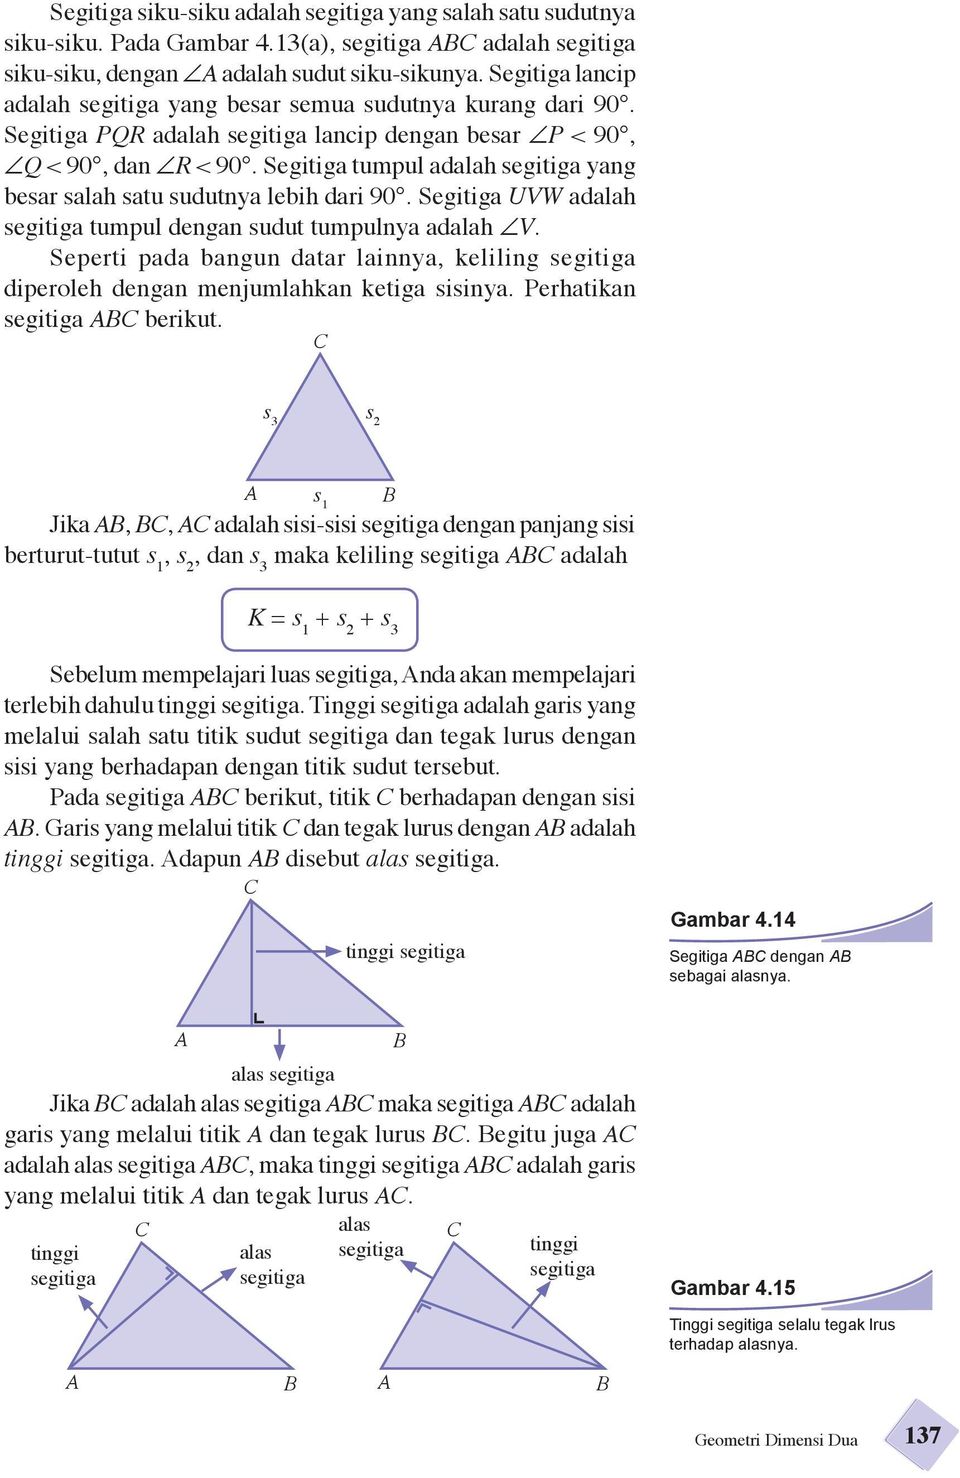 Segitiga tumpul adalah segitiga yang besar salah satu sudutnya lebih dari 90. Segitiga UVW adalah segitiga tumpul dengan sudut tumpulnya adalah V.